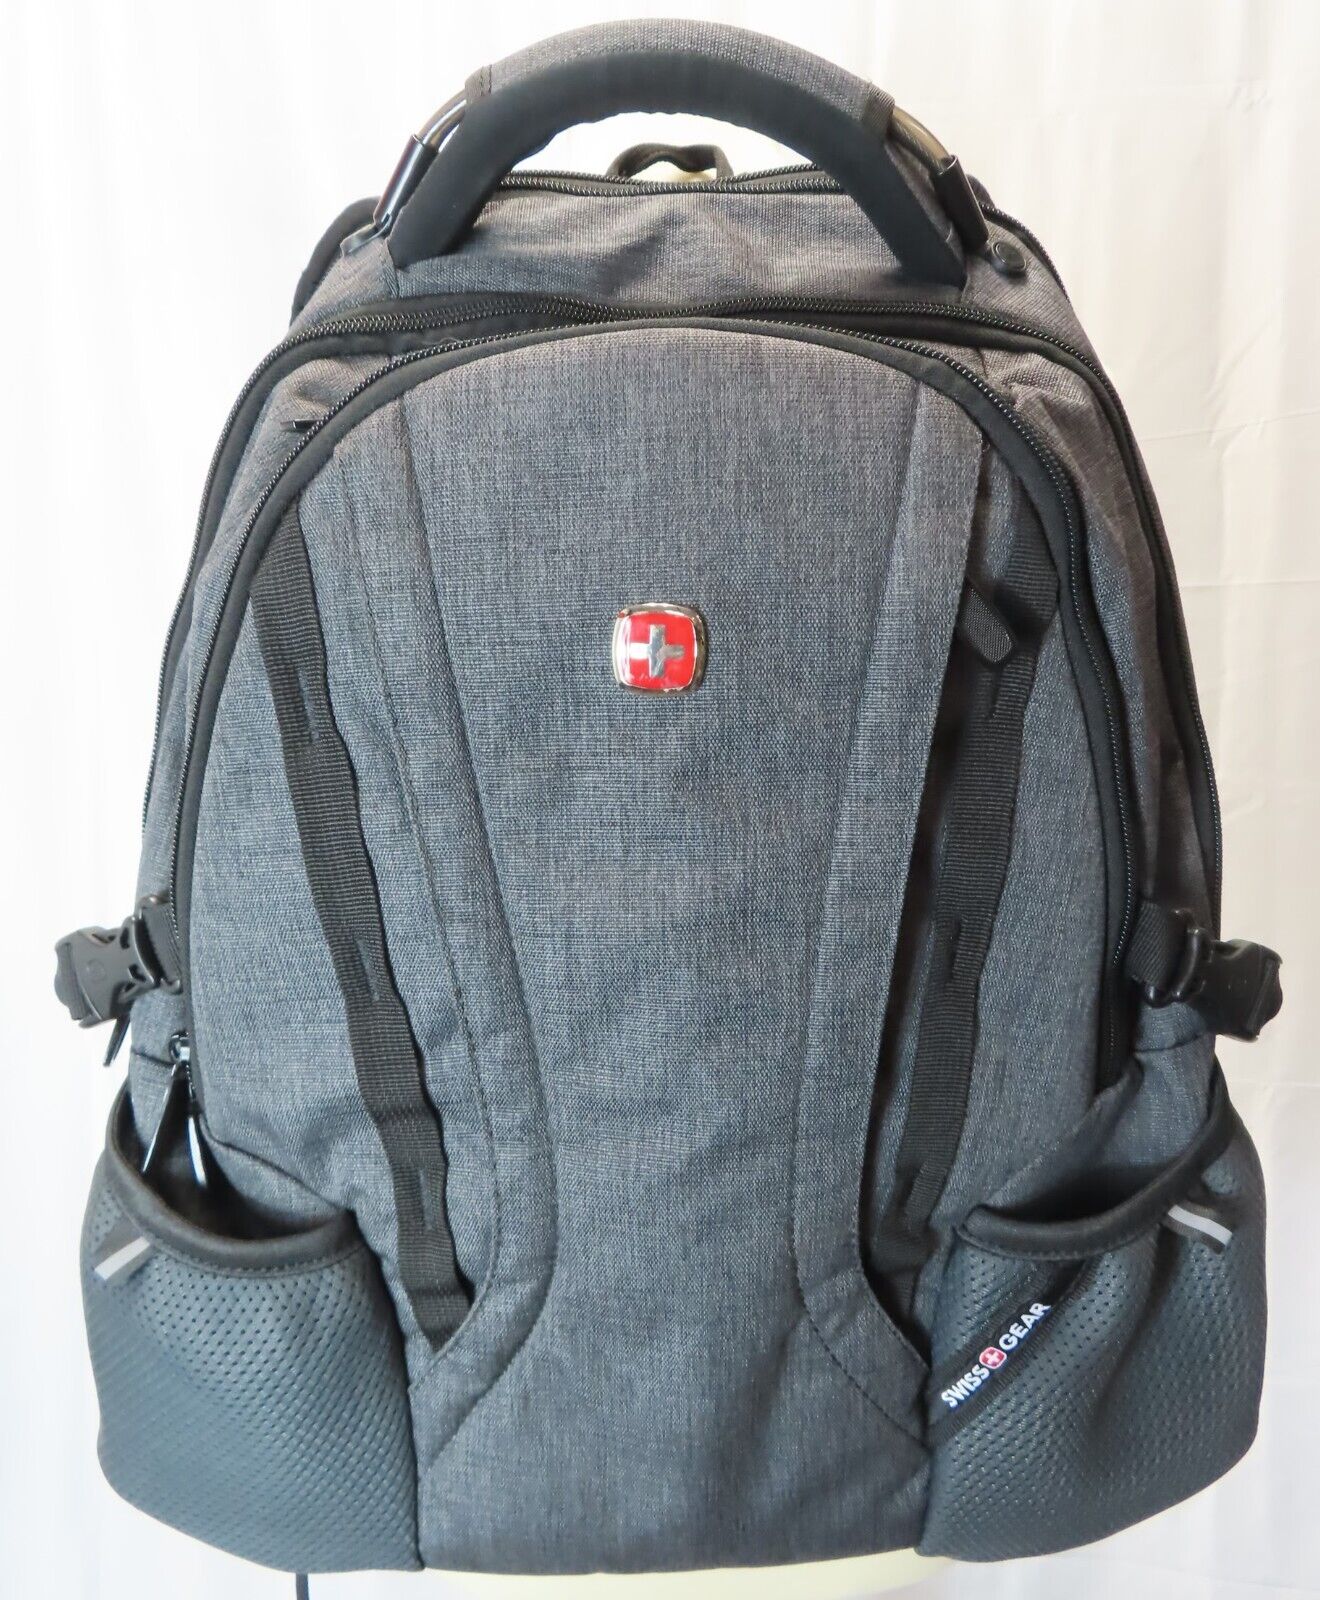 SwissGear ScanSmart All-in-One Backpack, Gray (7360)